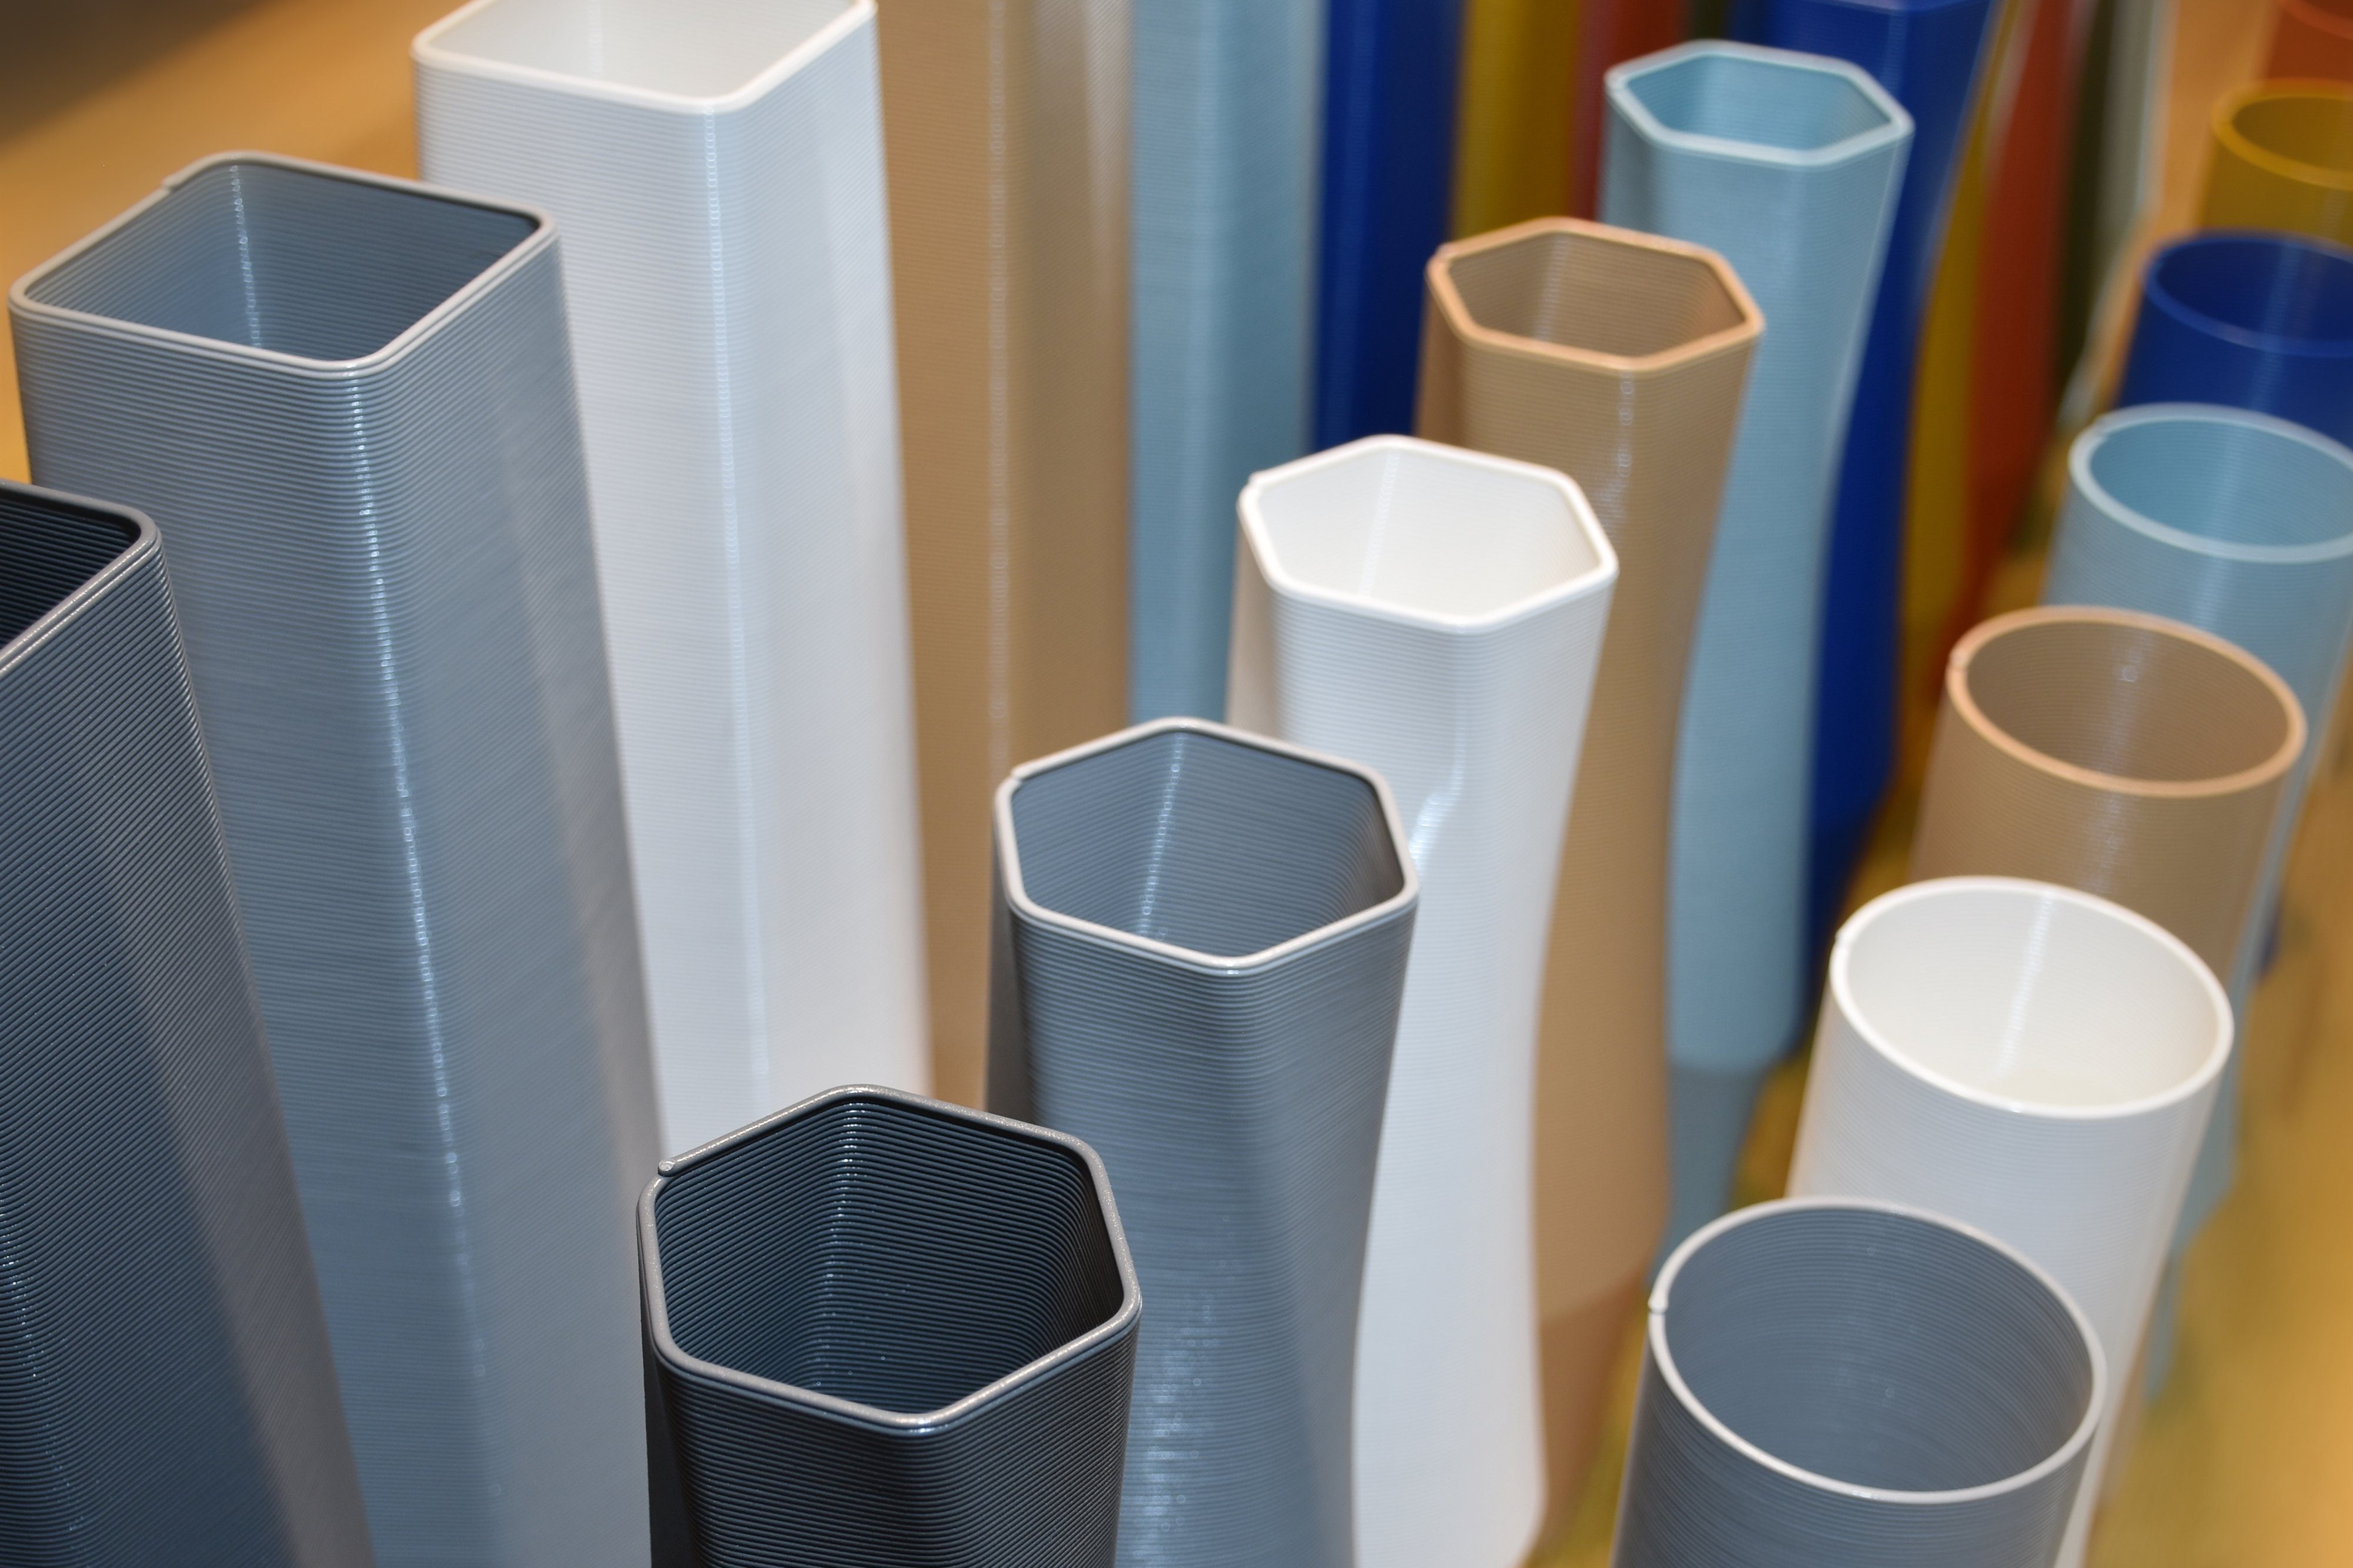 - Wasserdicht; innerhalb viele vase Farben, Vasen, Leichte (Rillung) Grau Struktur Materials (basic), (Einzelmodell, 100% square - des Vase), Shapes Dekovase 3D 3D-Druck Decorations 1 the